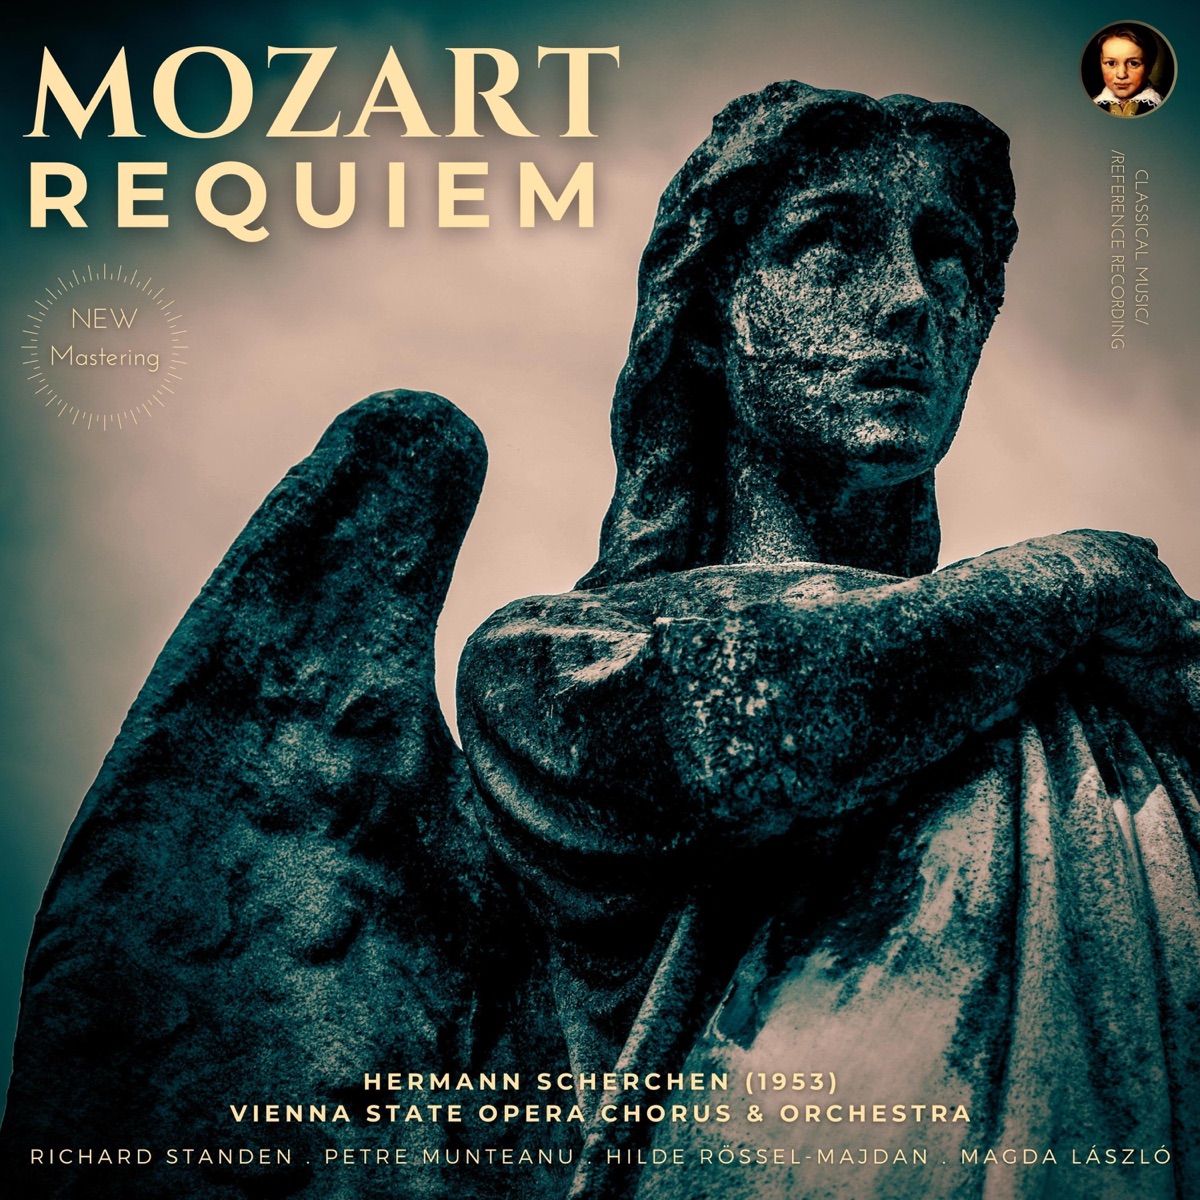 Mozart - Requiem - Confutatis (Latin - Español) 